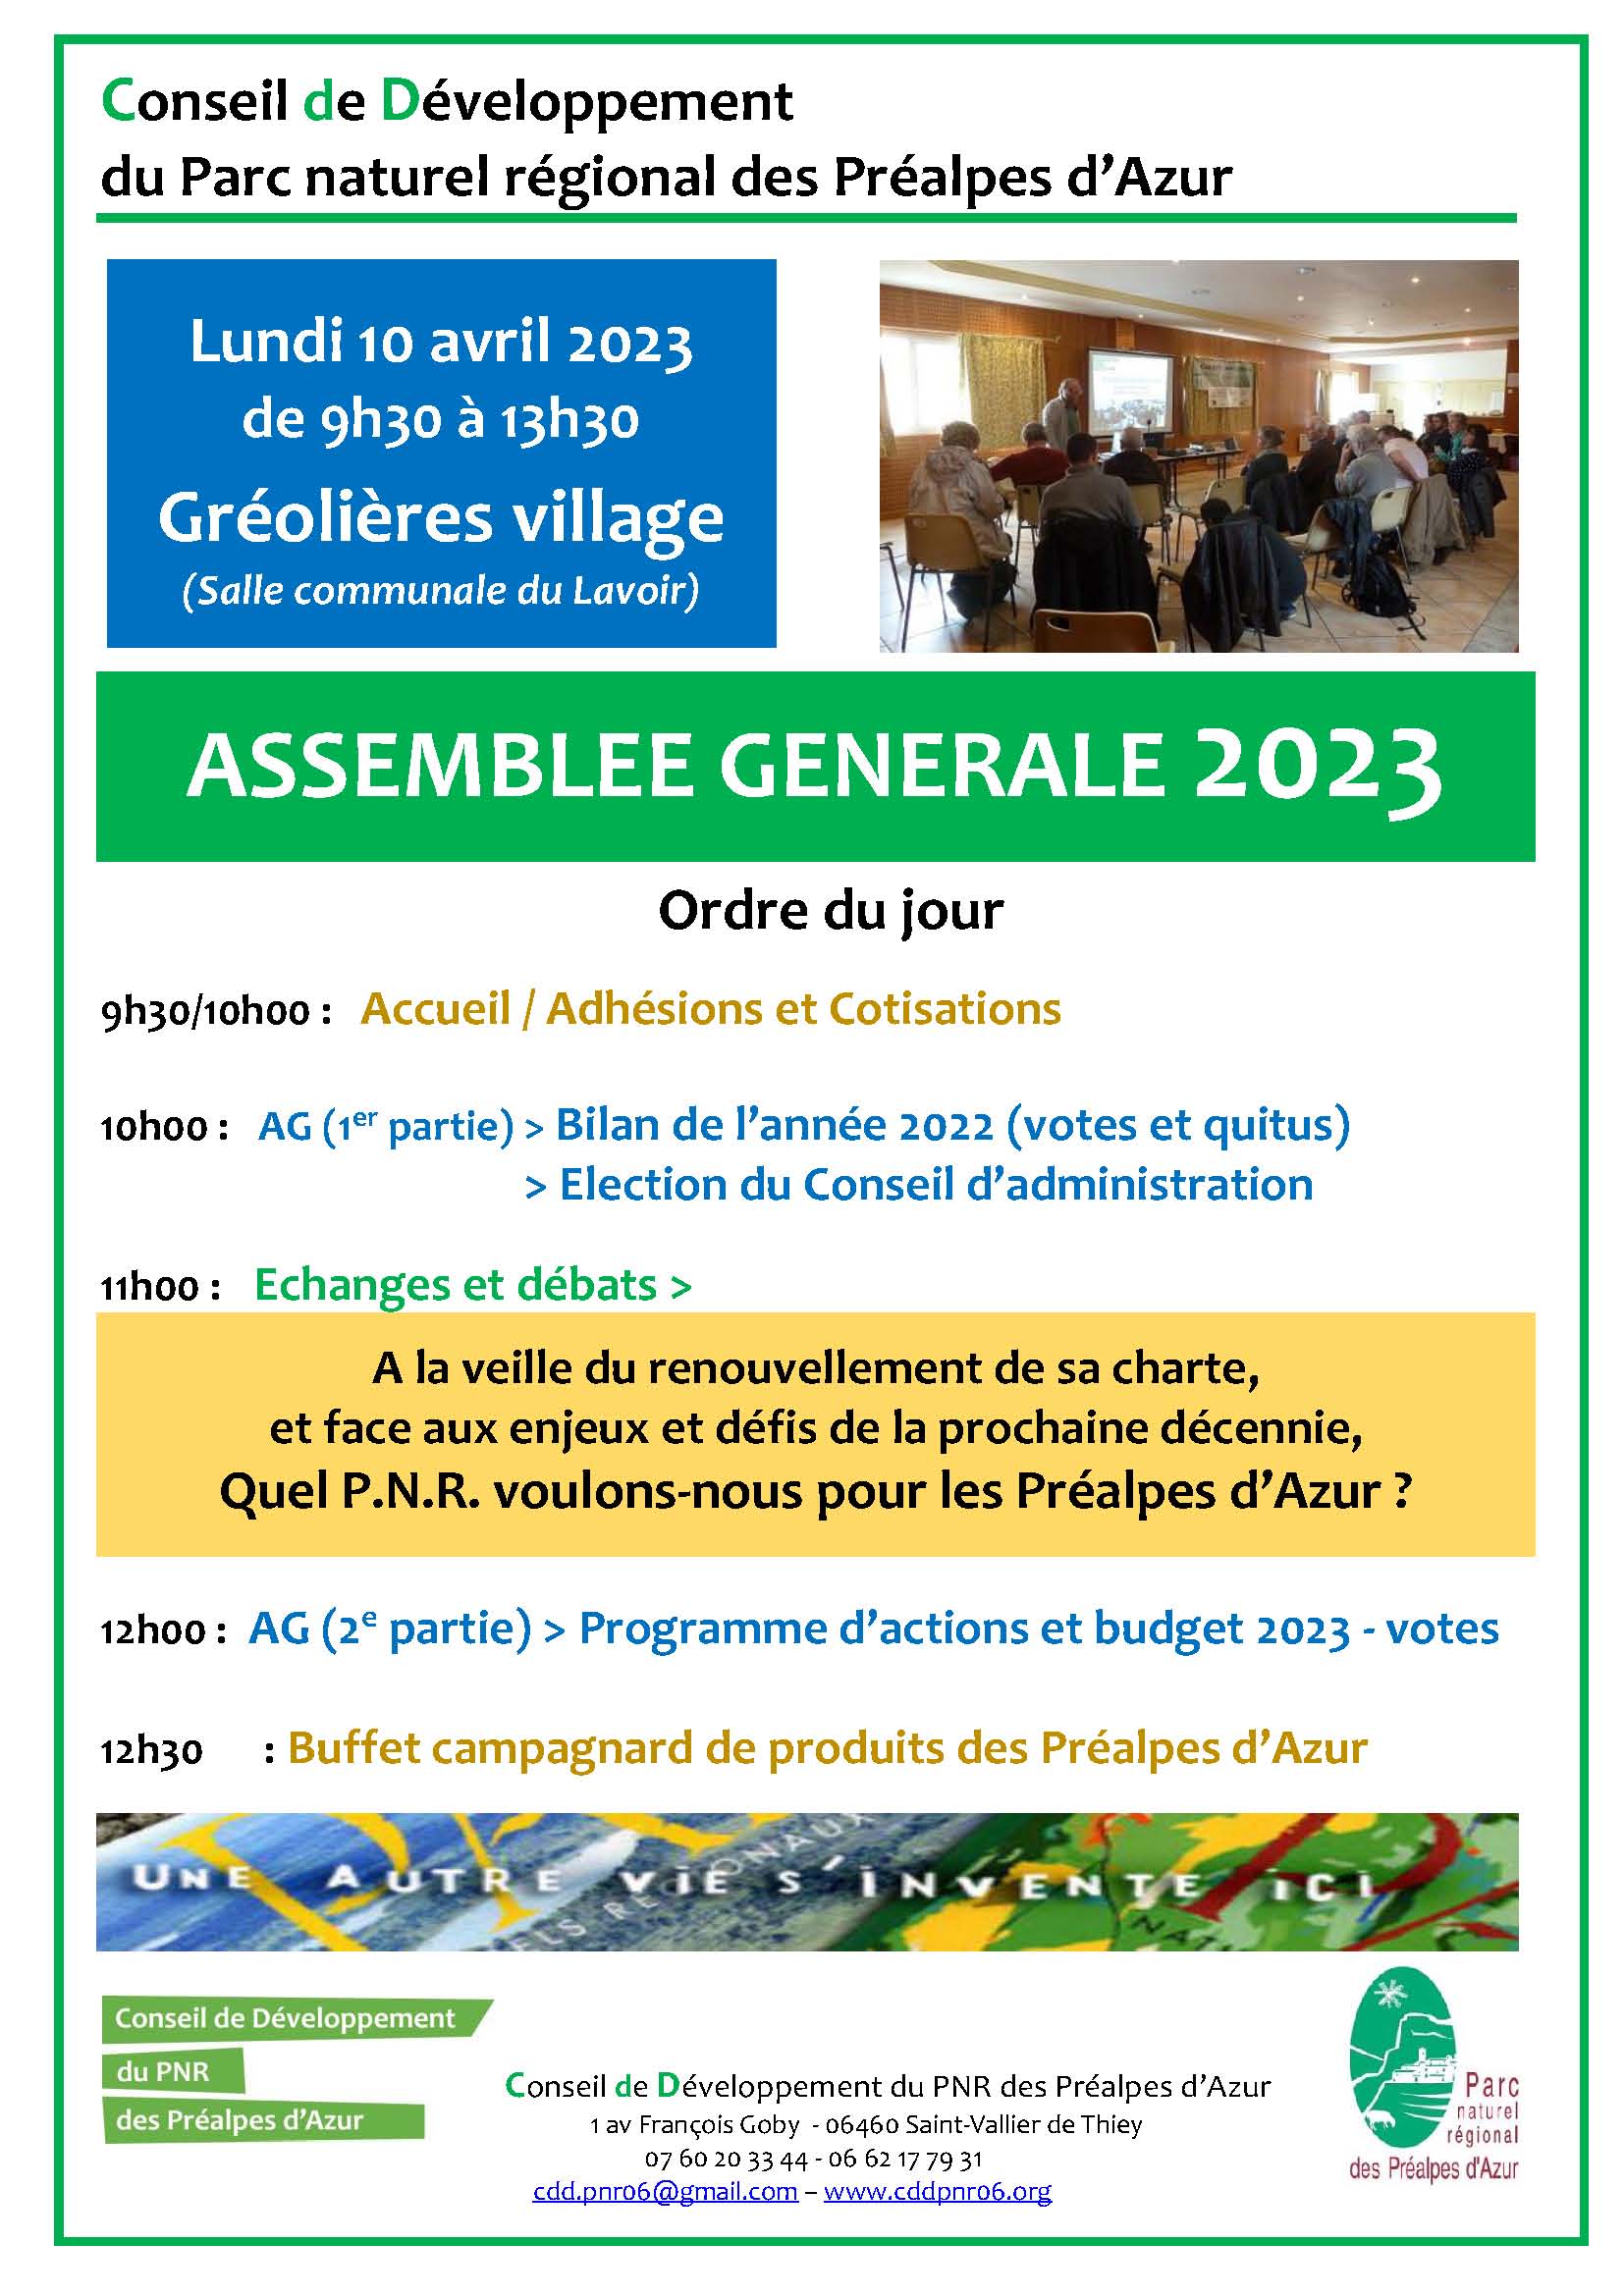 Assemblée Générale 2023 du Conseil de Développement, le 10 avril à la salle du lavoir (Gréolières)